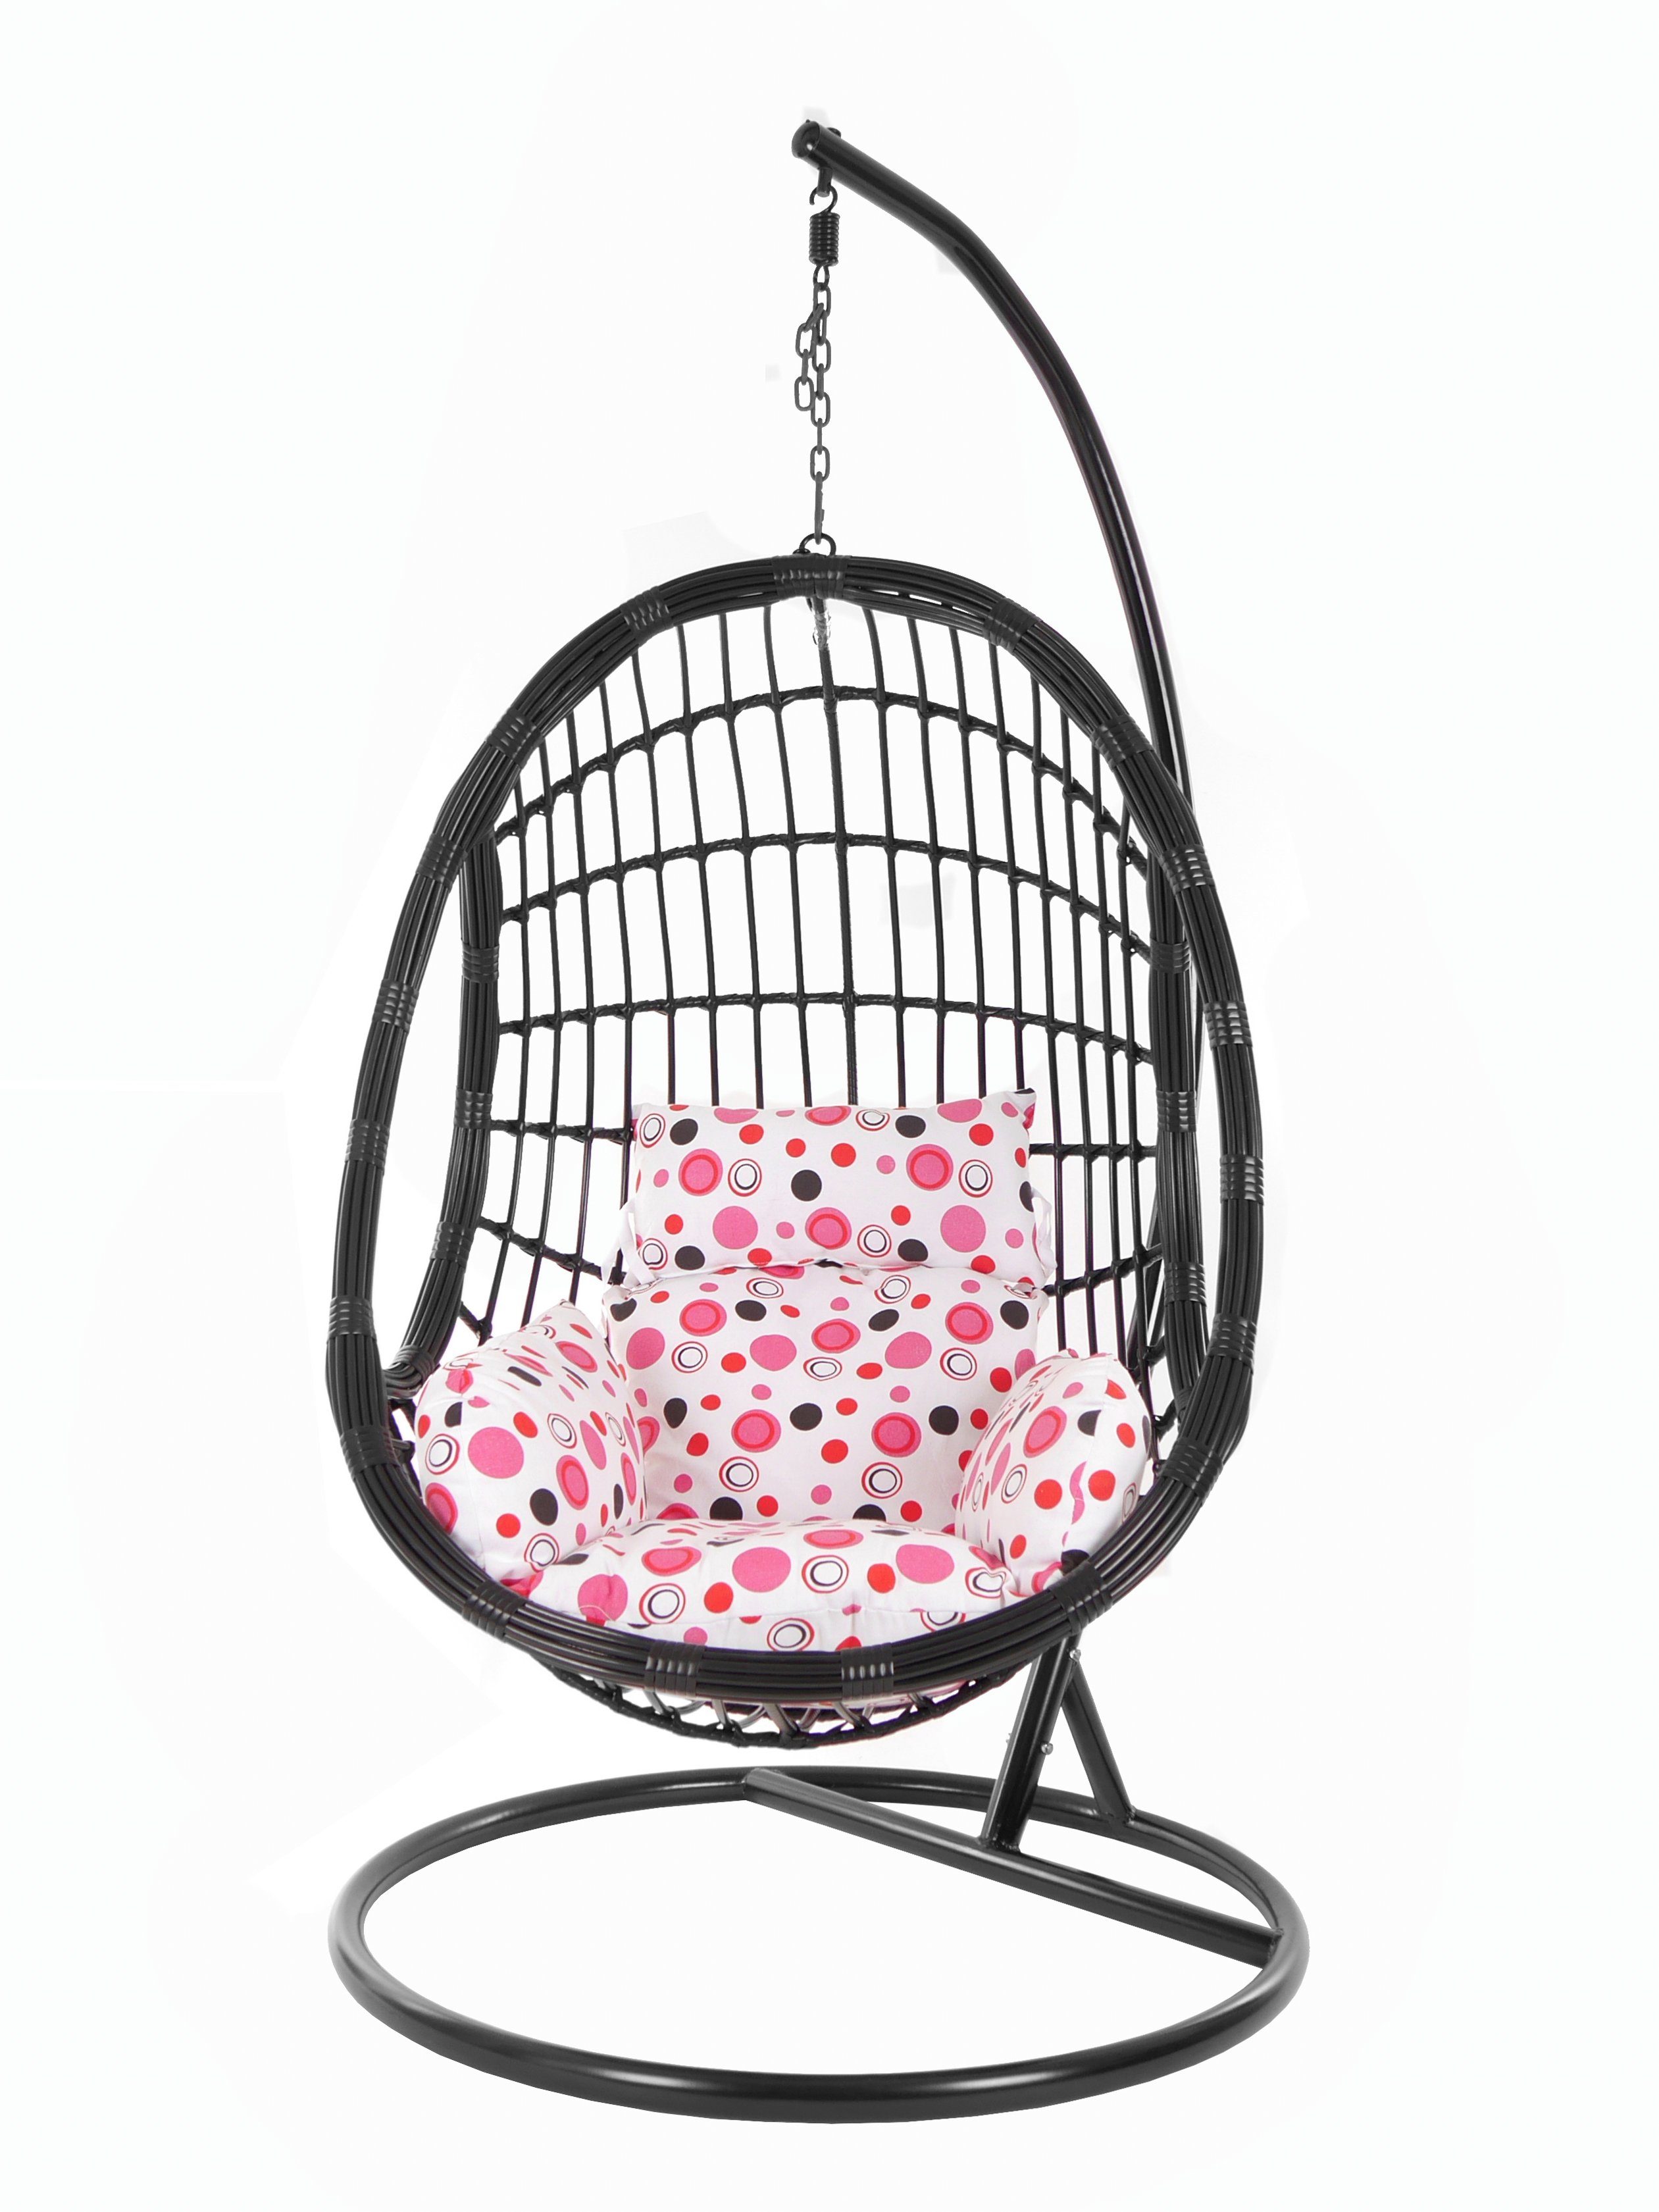 Schwarz, Hängesessel PALMANOVA mit black, Loungemöbel, KIDEO Hängesessel lemonade und (3039 Schwebesessel, dot) rosa Kissen, Swing Chair, Gestell Muster gepunktet